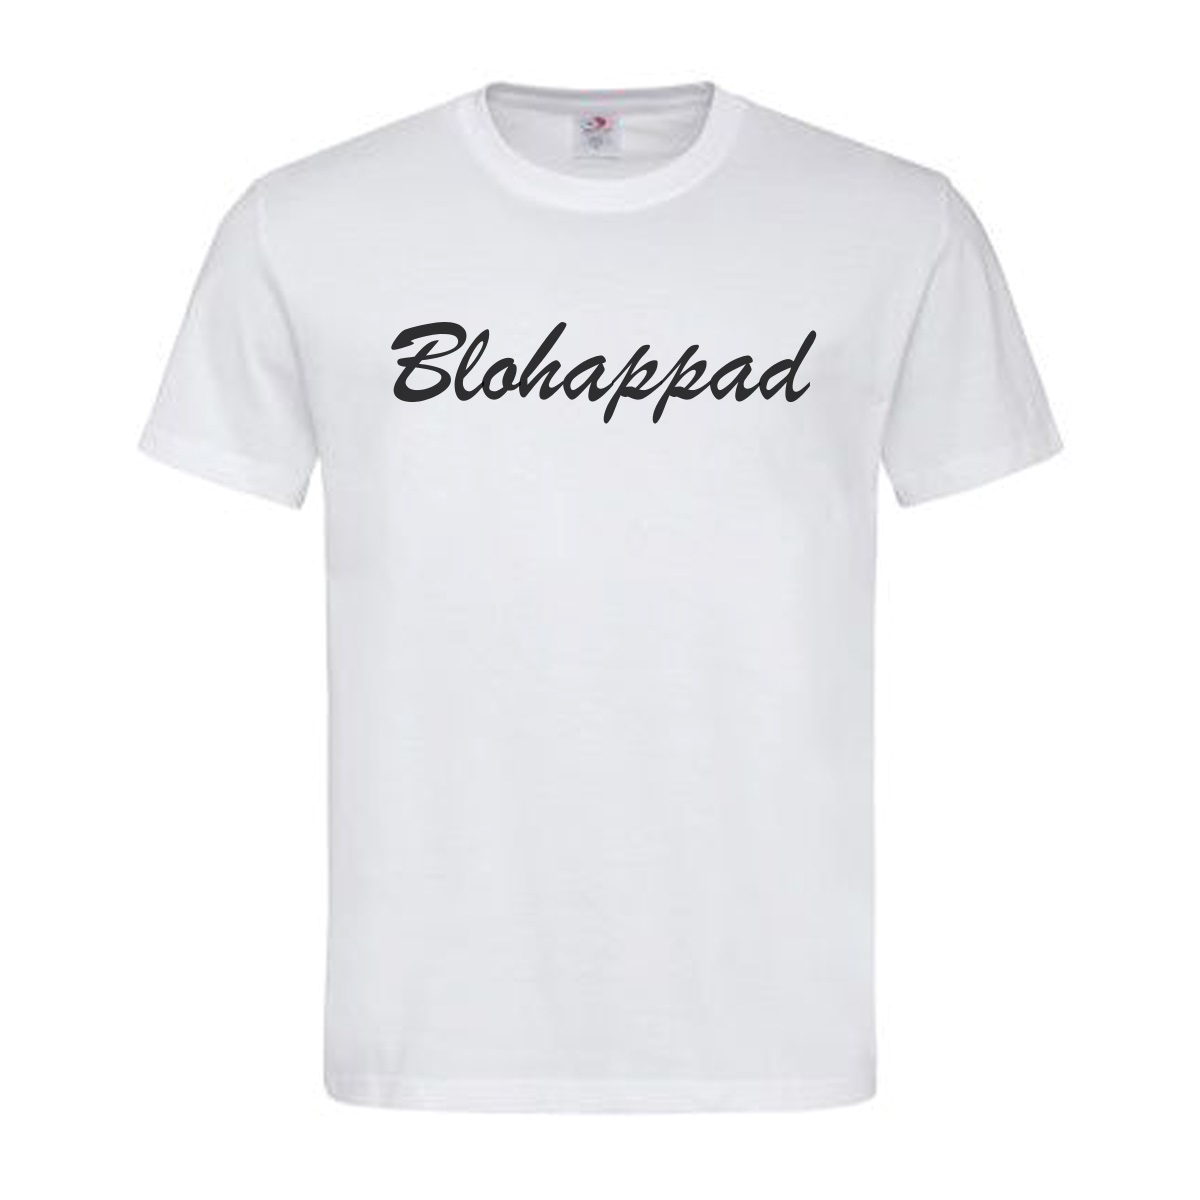 T-Shirt Oberösterreich Blohappad – Bloßfüßig in Mundart, Dialekt